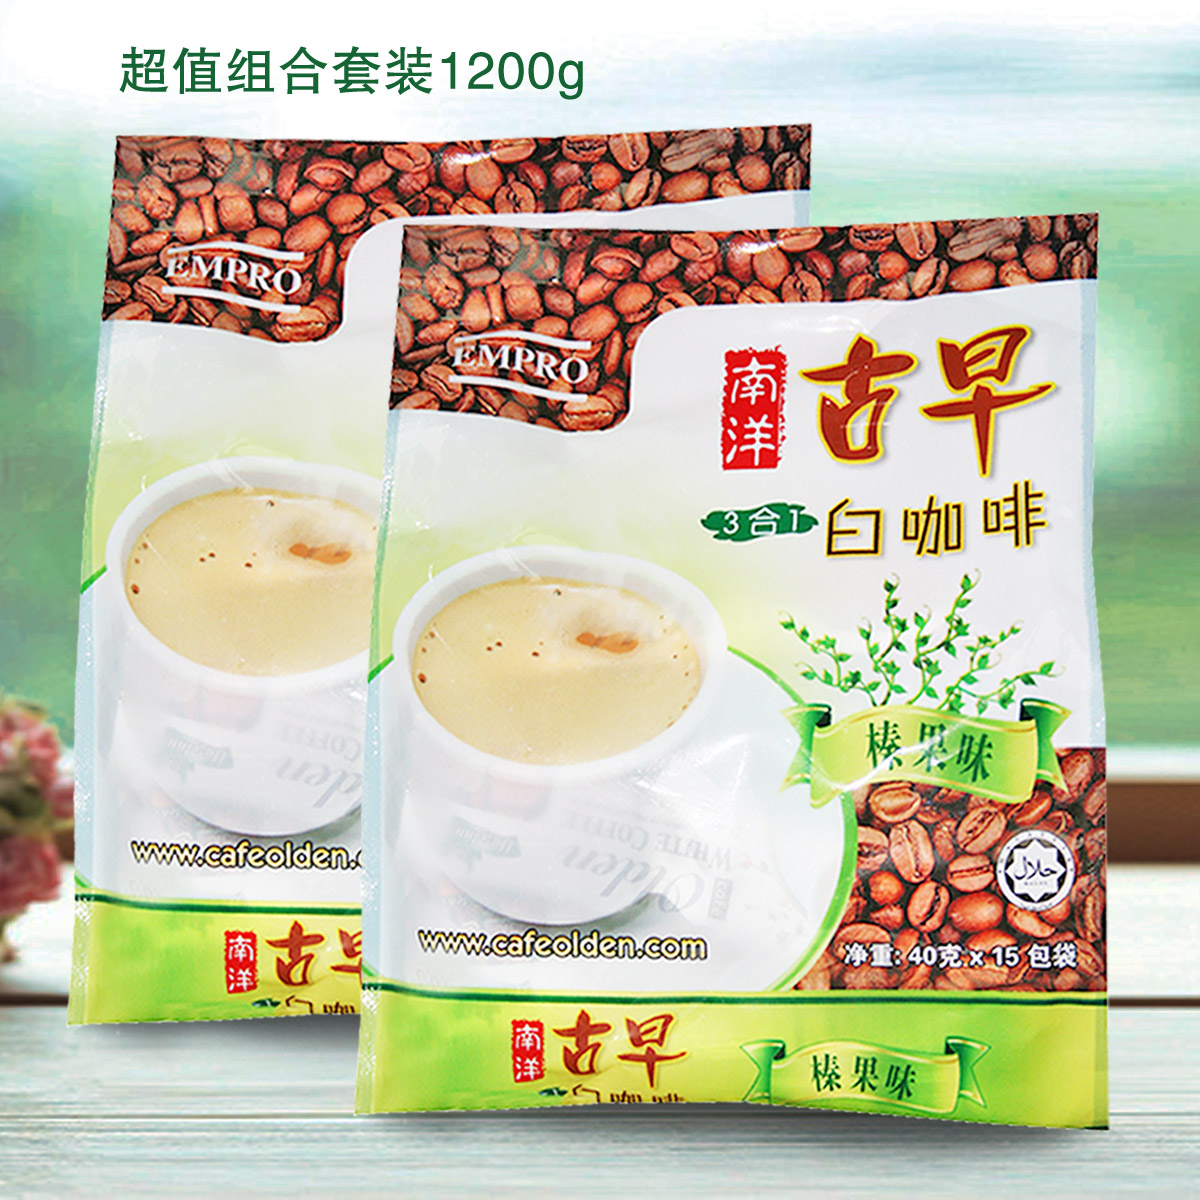 马来西亚原装进口南洋古早榛果味三合一速溶白咖啡1200g